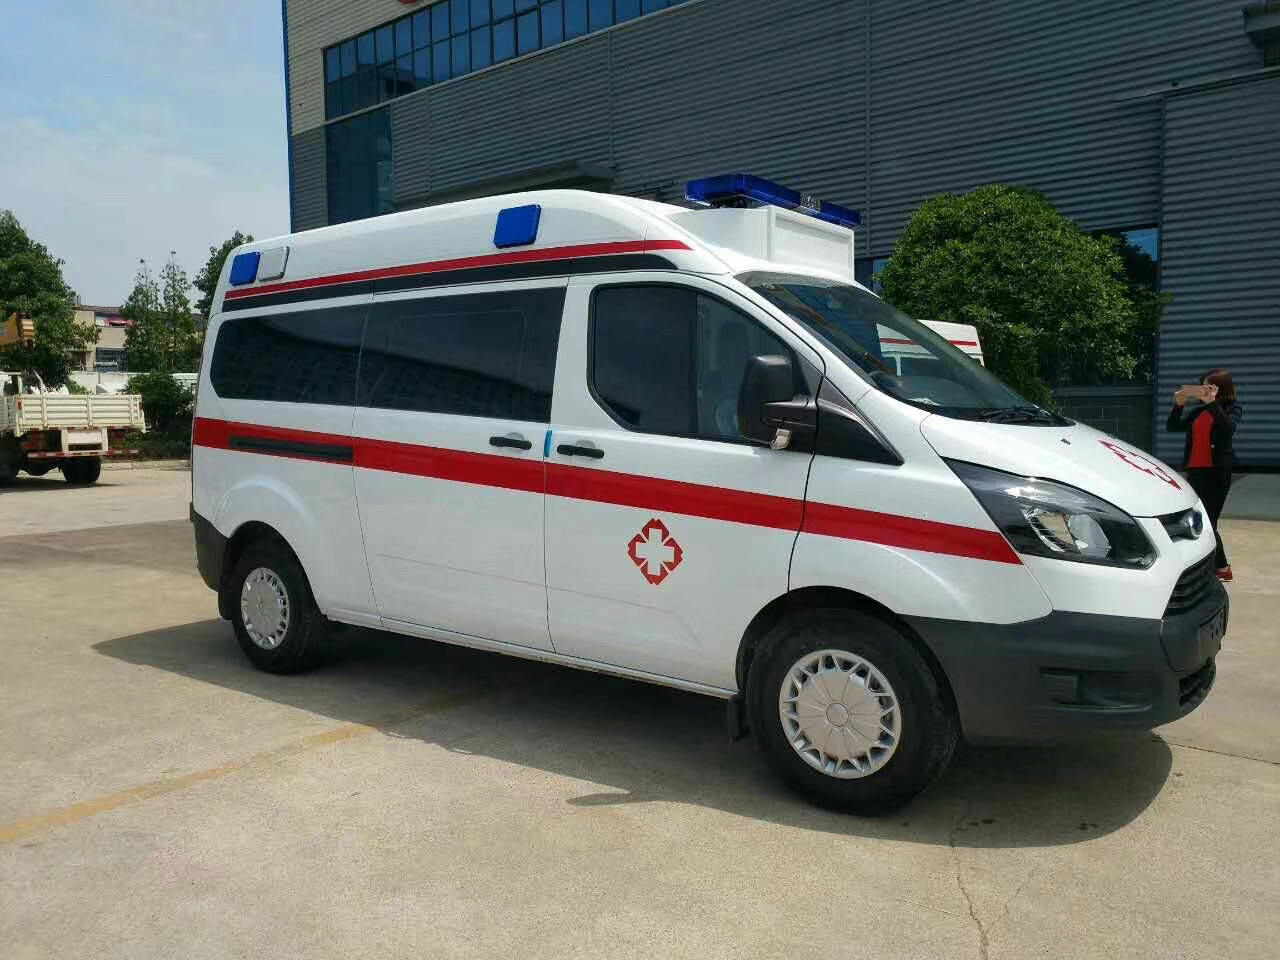 青州市出院转院救护车